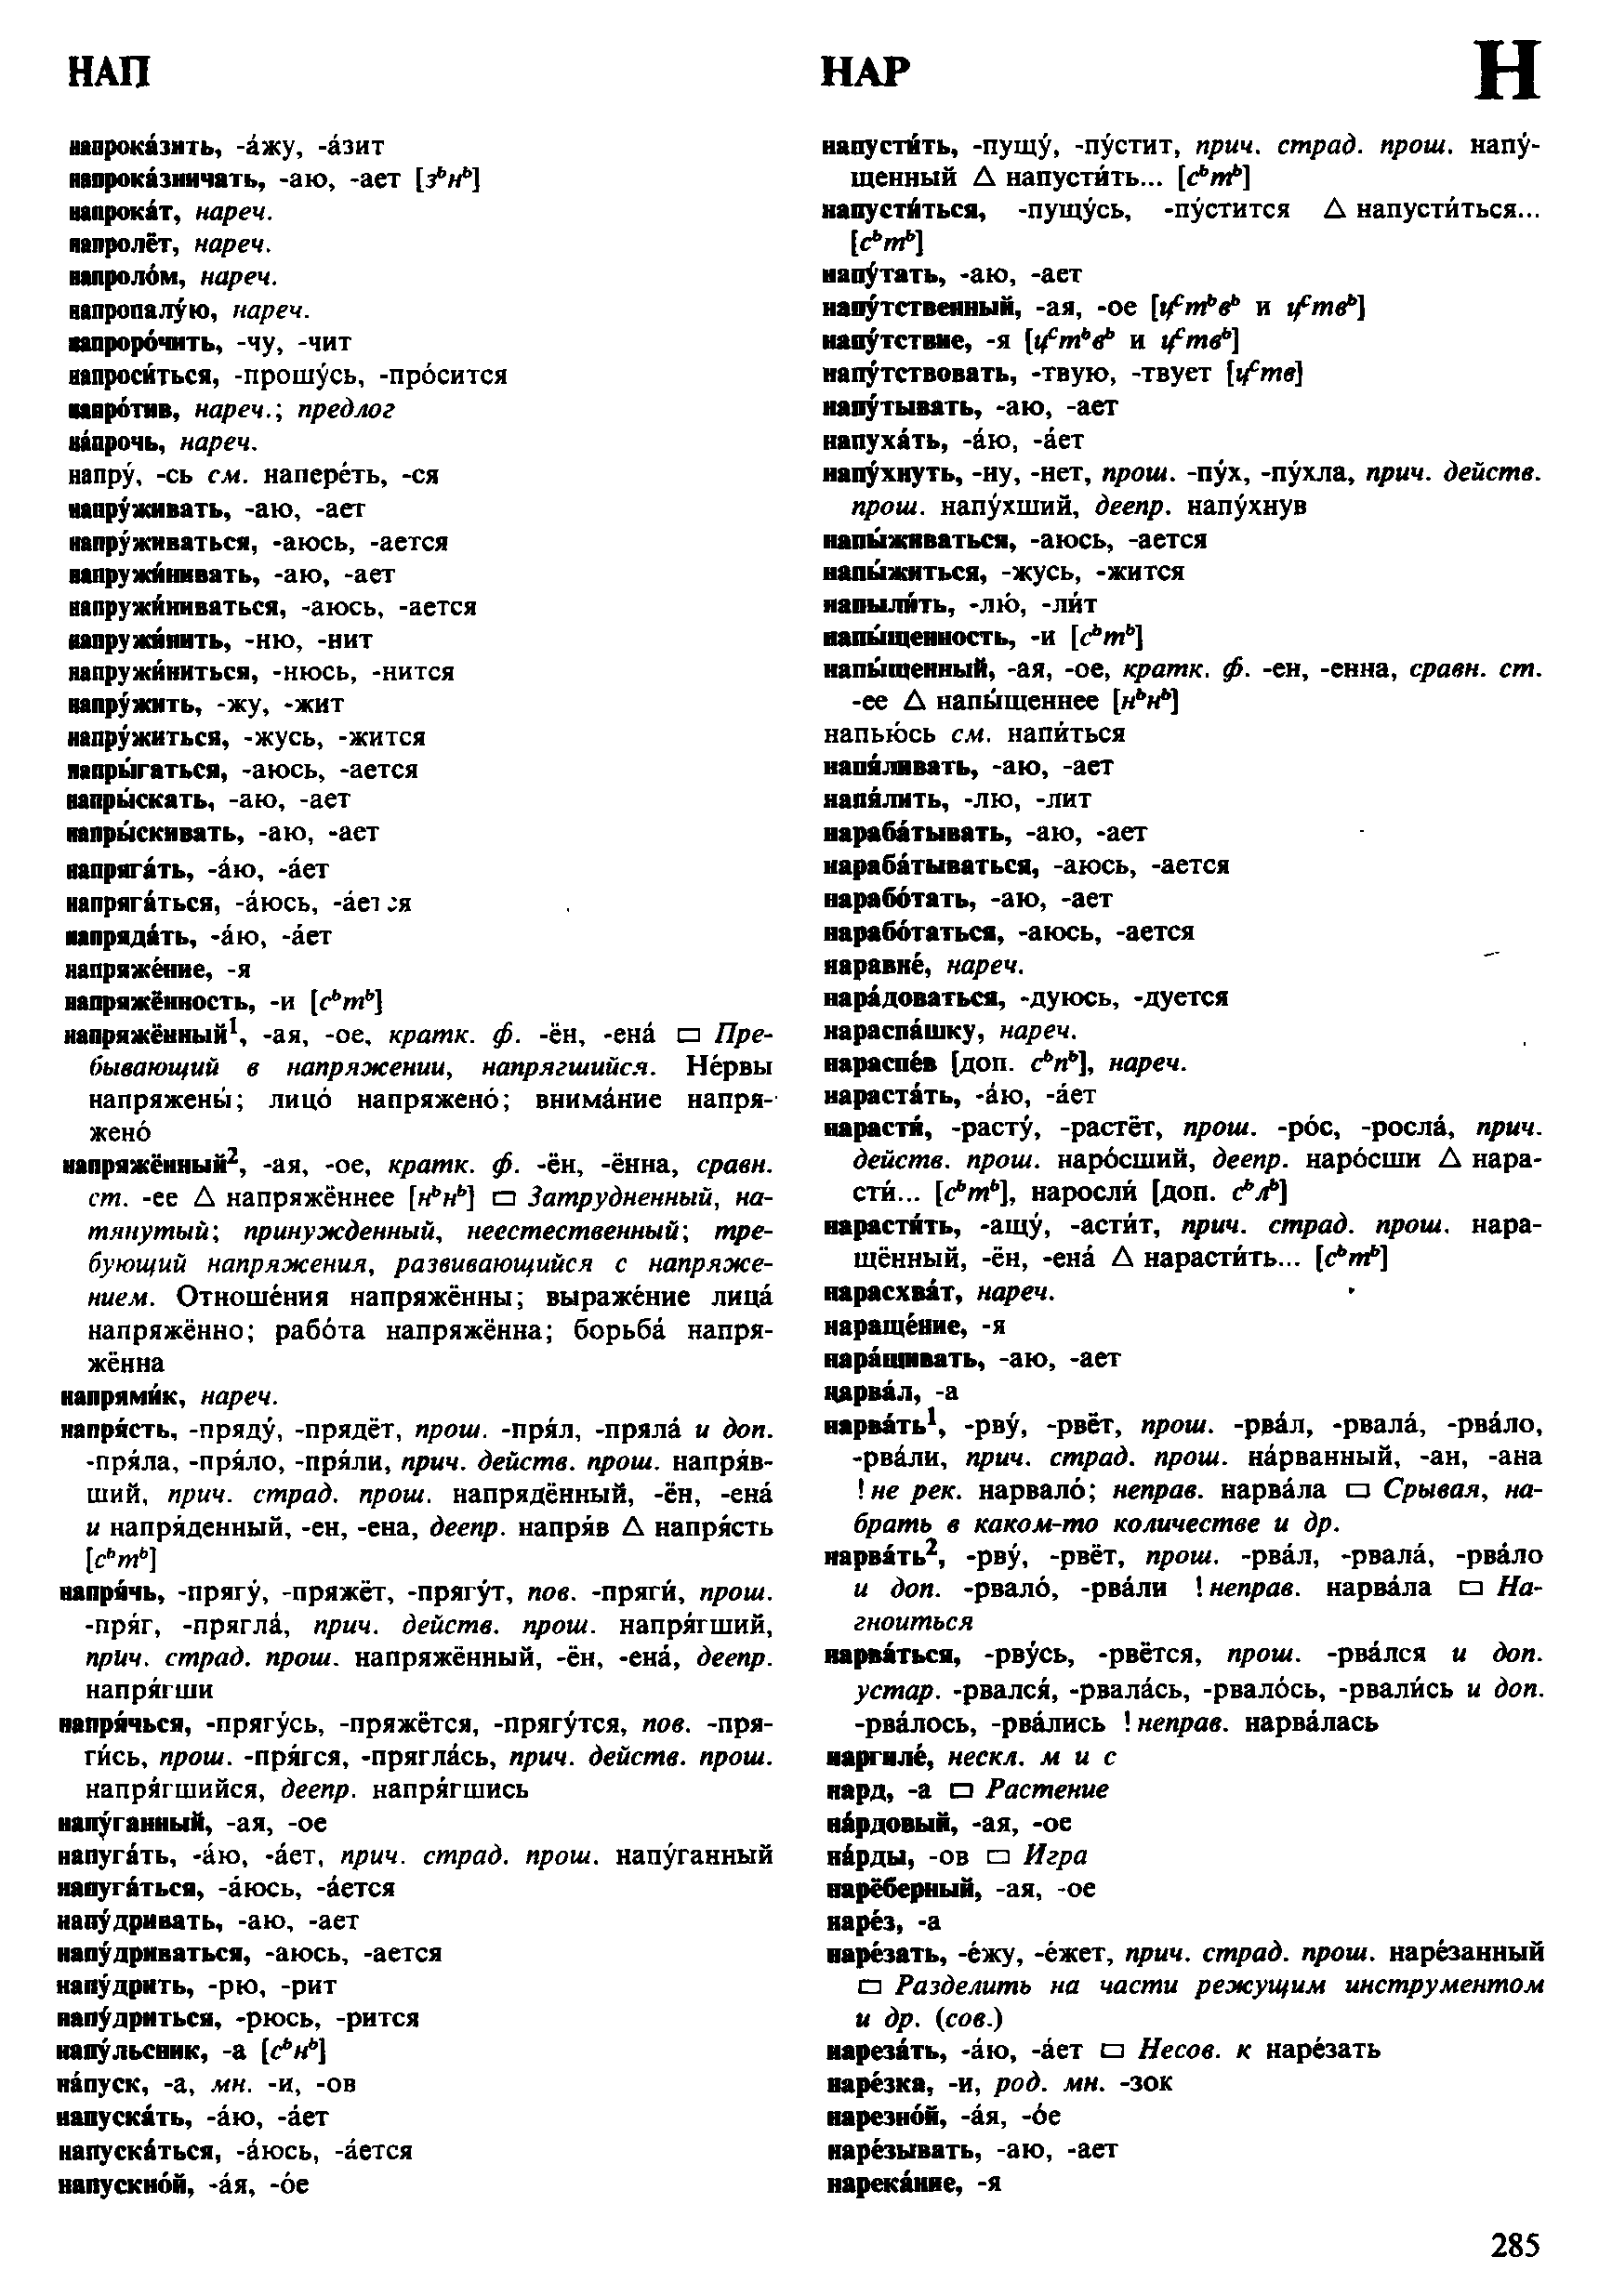 Фотокопия pdf / скан страницы 285 орфоэпического словаря под редакцией Аванесова (4 издание, 1988 год)